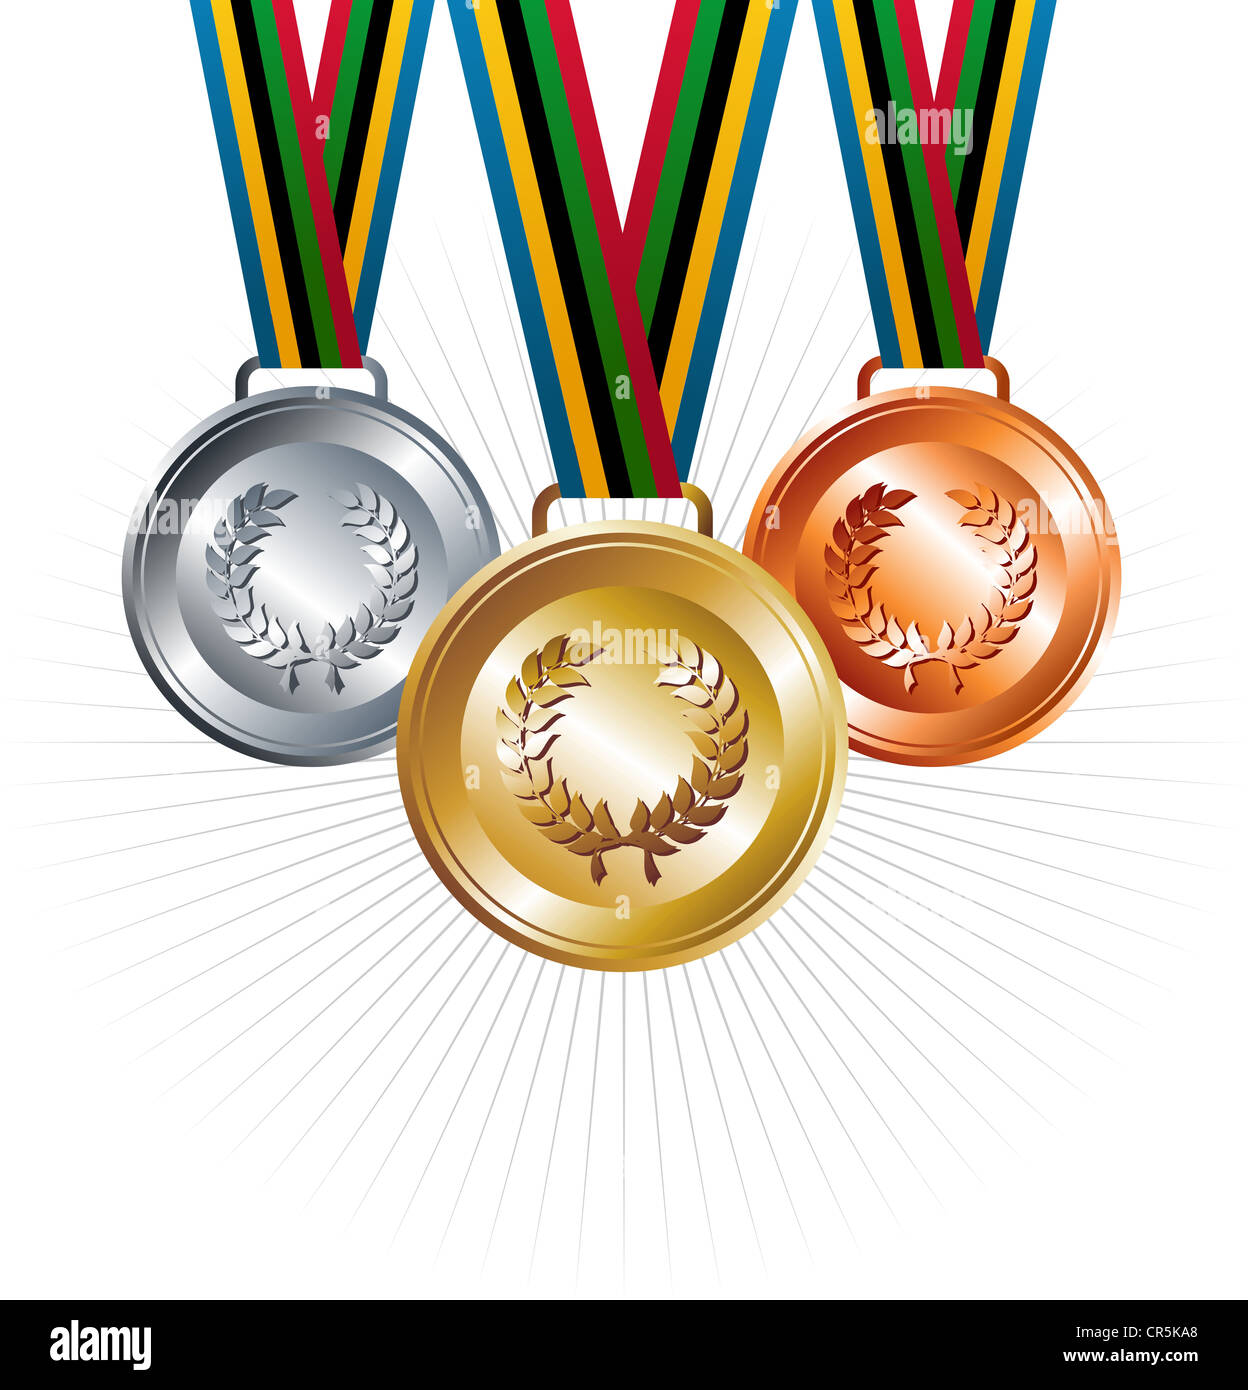 Sport Gold, silberne und Bronze Medaillen mit Menübandelemente legen Hintergrund. Vektor-Datei geschichtet für einfache Handhabung und Anpassung. Stockfoto